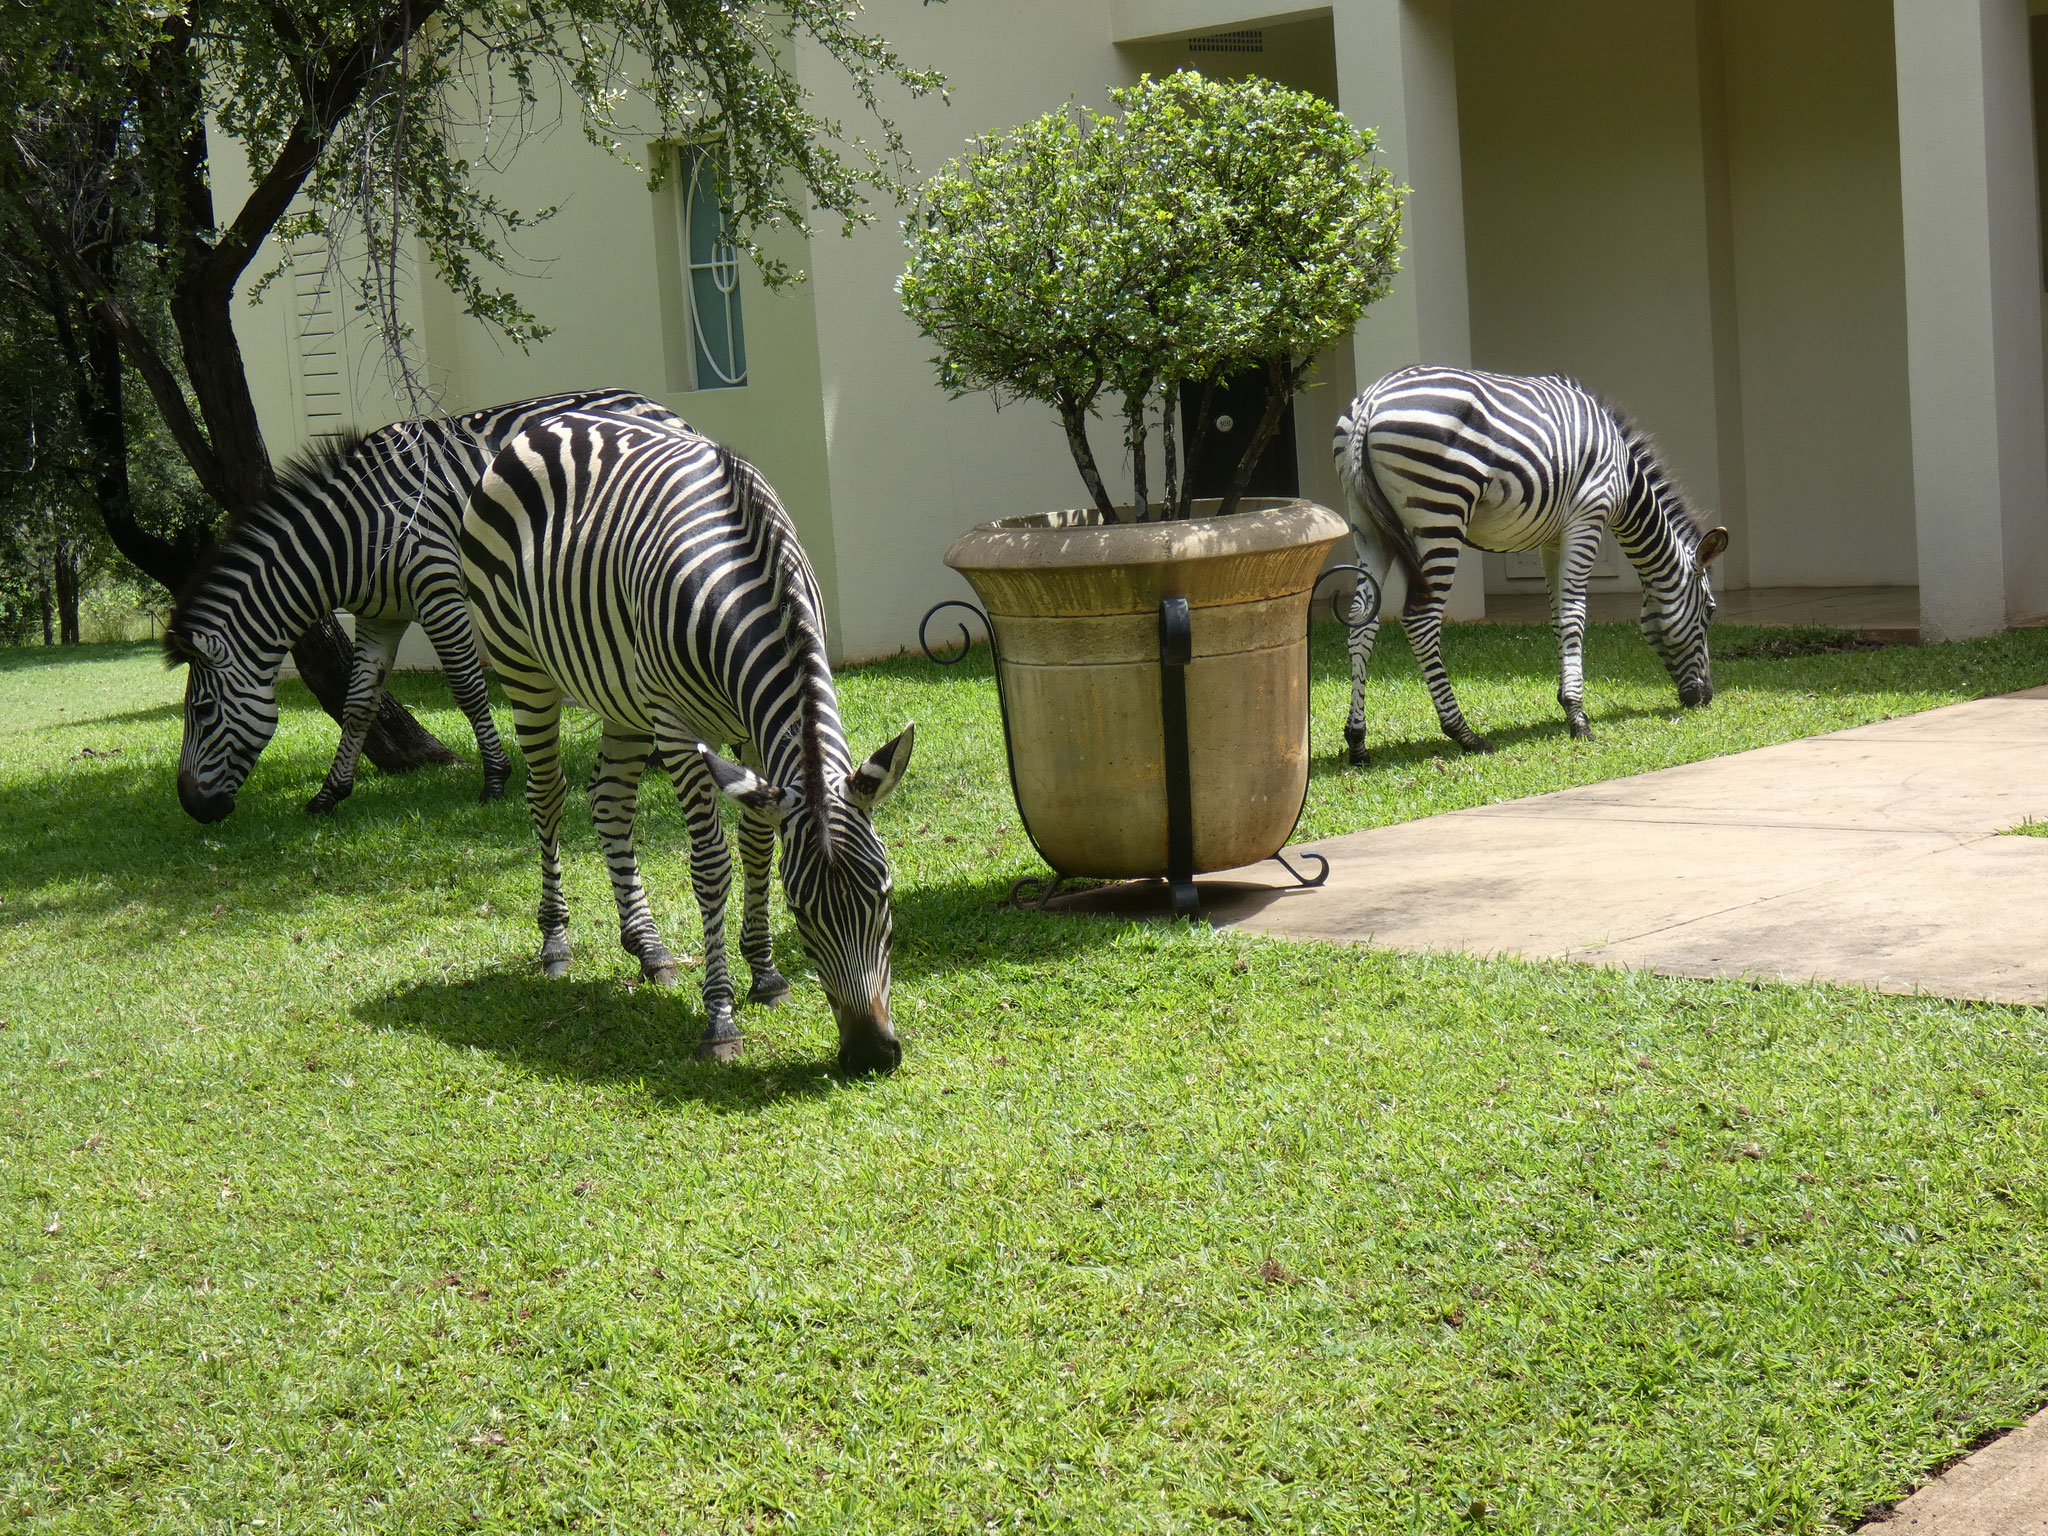 ... inkl. grasenden Zebras ......